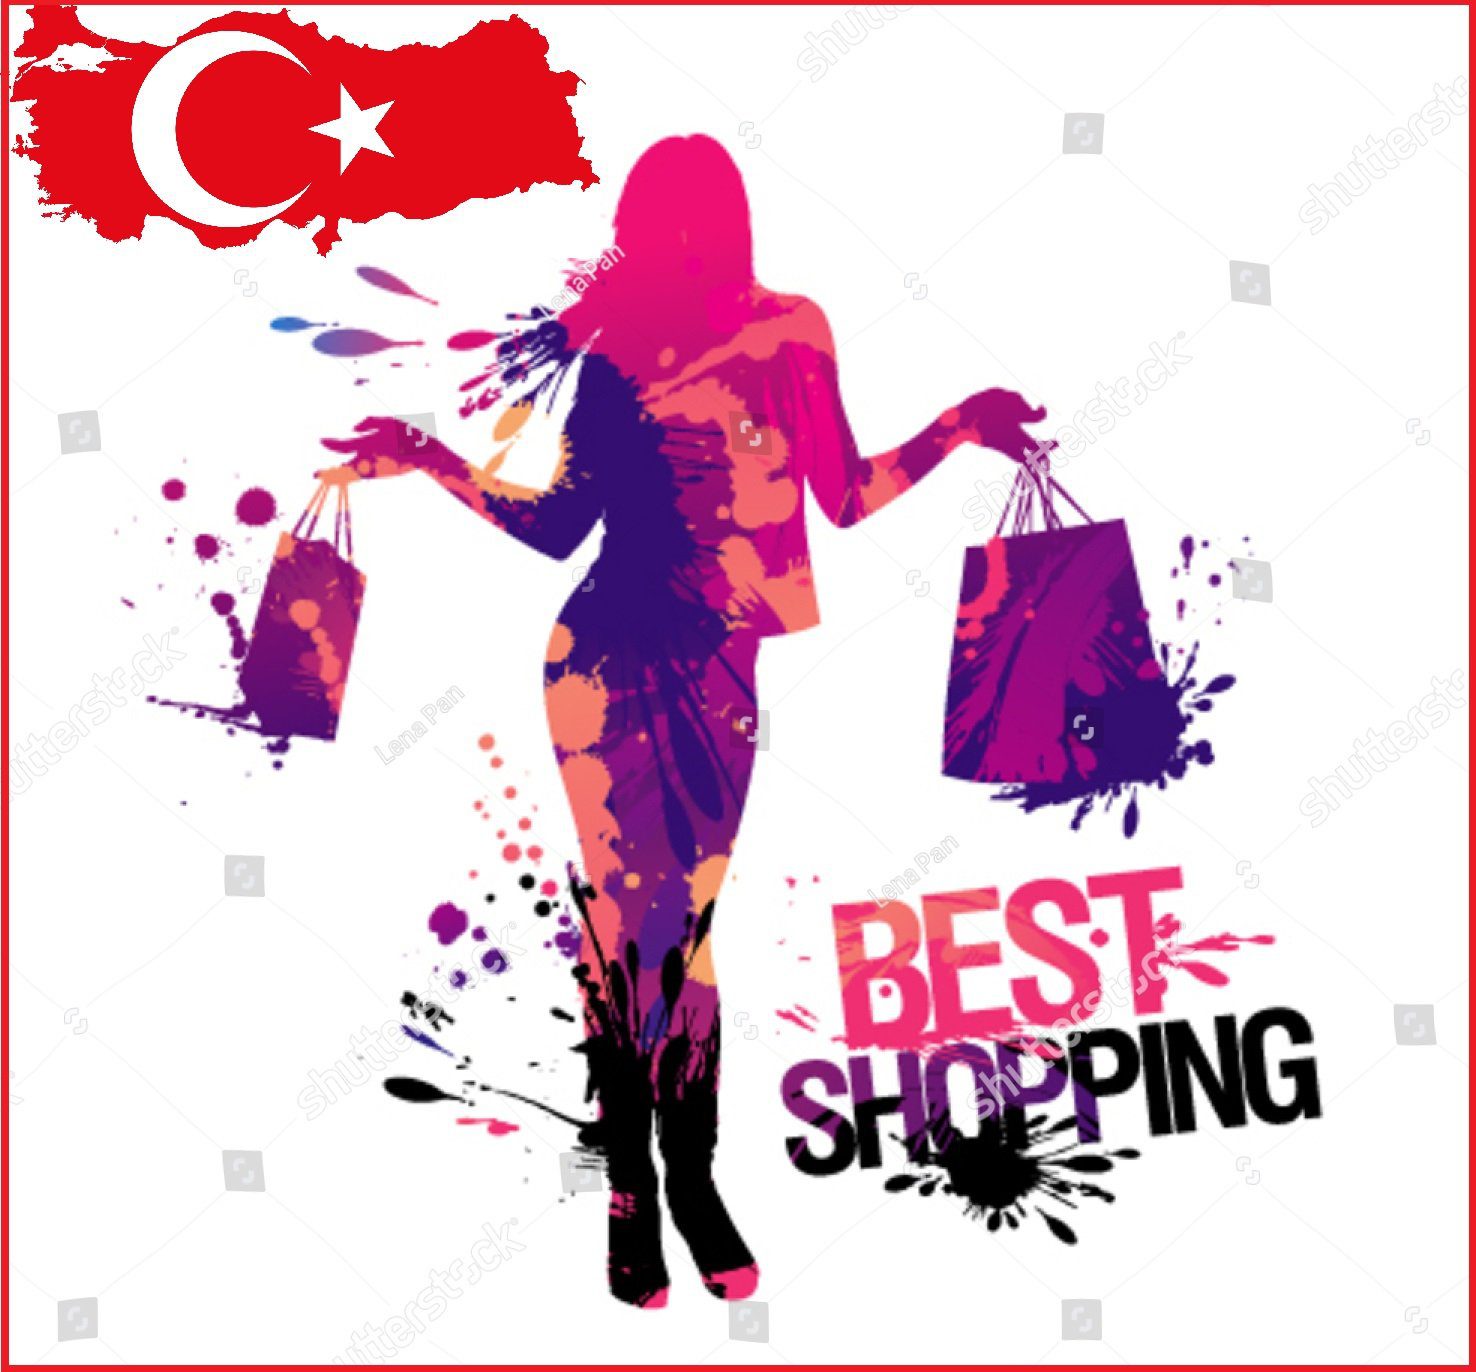 مواقع تسوق تركية